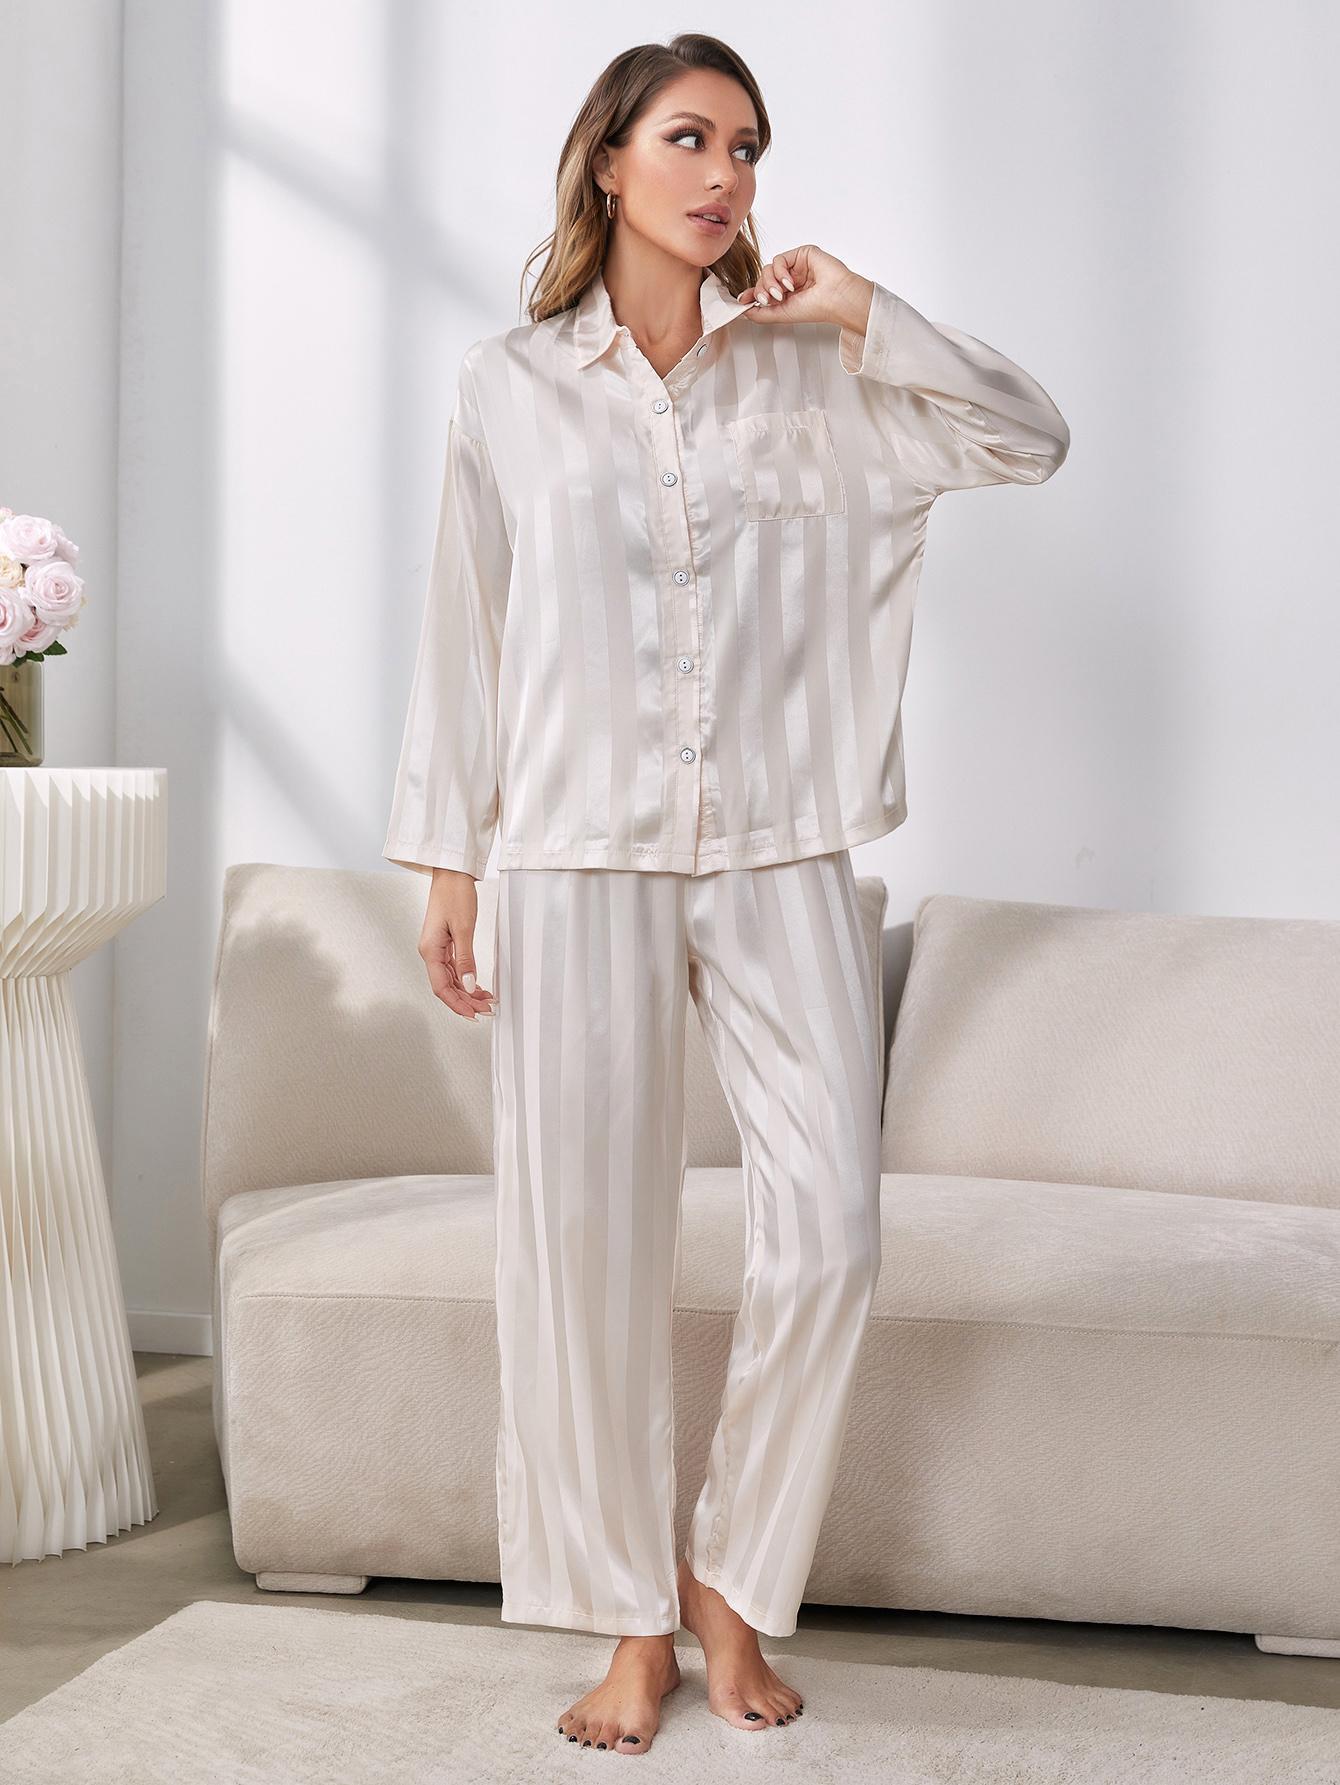 Model standing wearing white striped pajama set